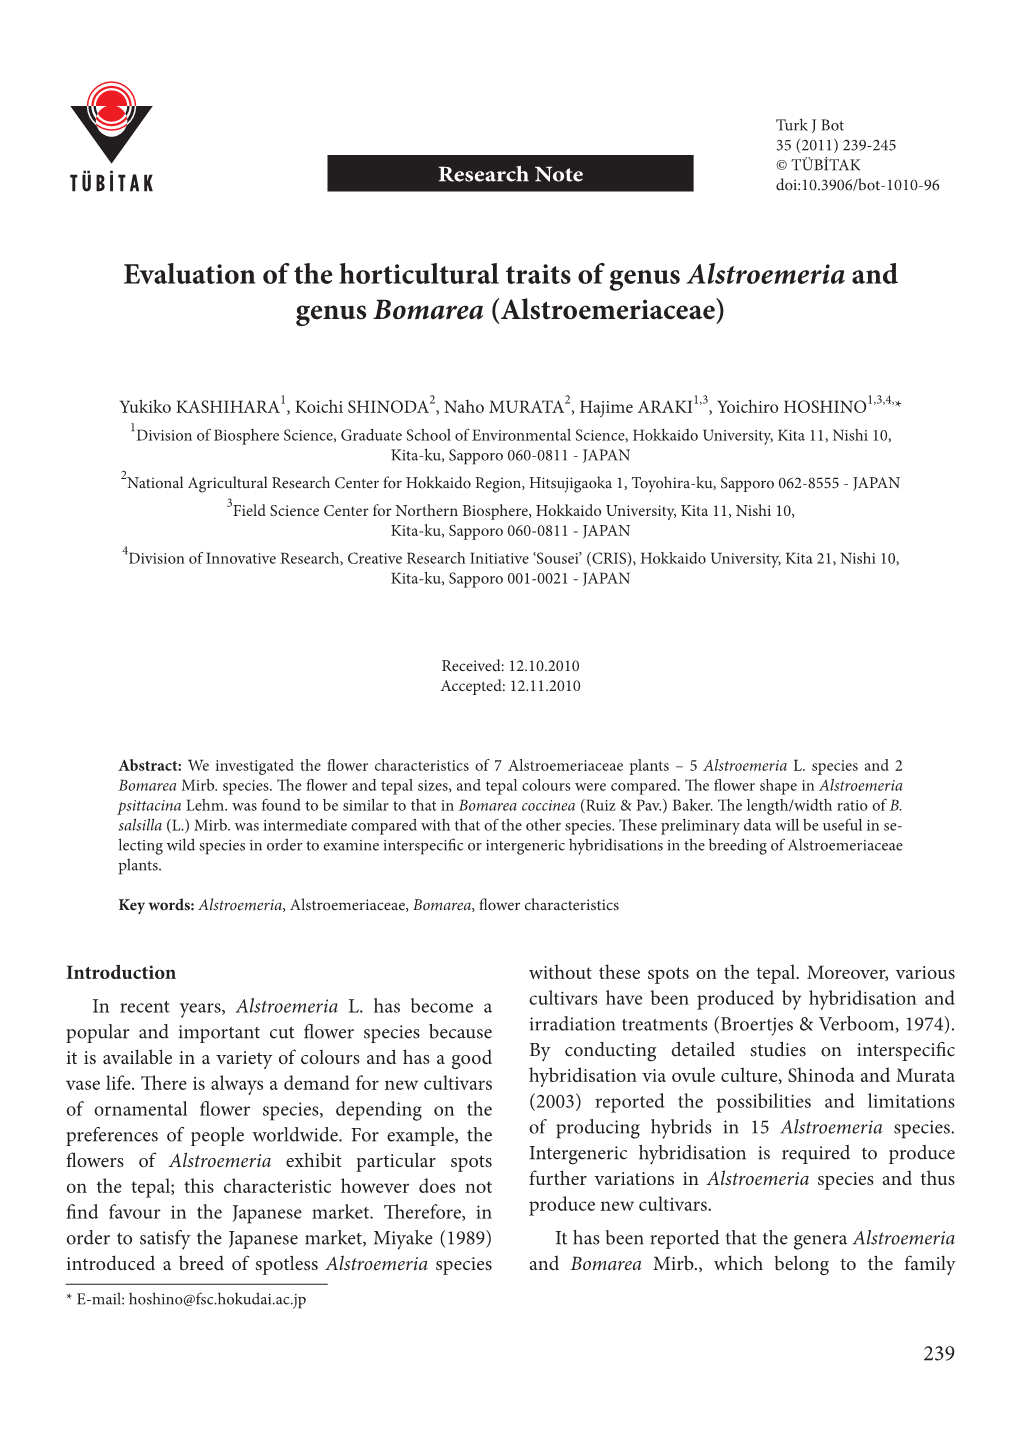 Evaluation of the Horticultural Traits of Genus Alstroemeria and Genus Bomarea (Alstroemeriaceae)